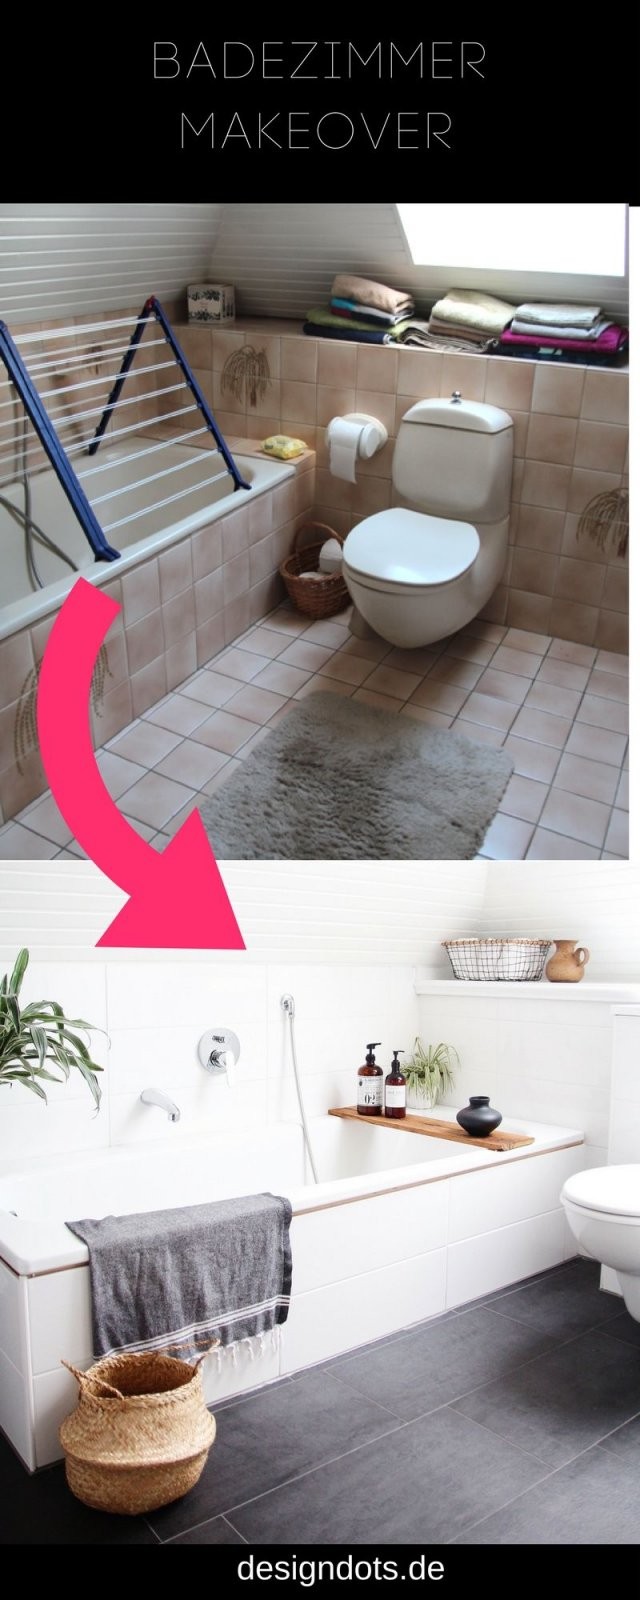 Badezimmer Selbst Renovieren  Bathroom  Pinterest  Bathroom von Bad Selber Renovieren Kosten Bild